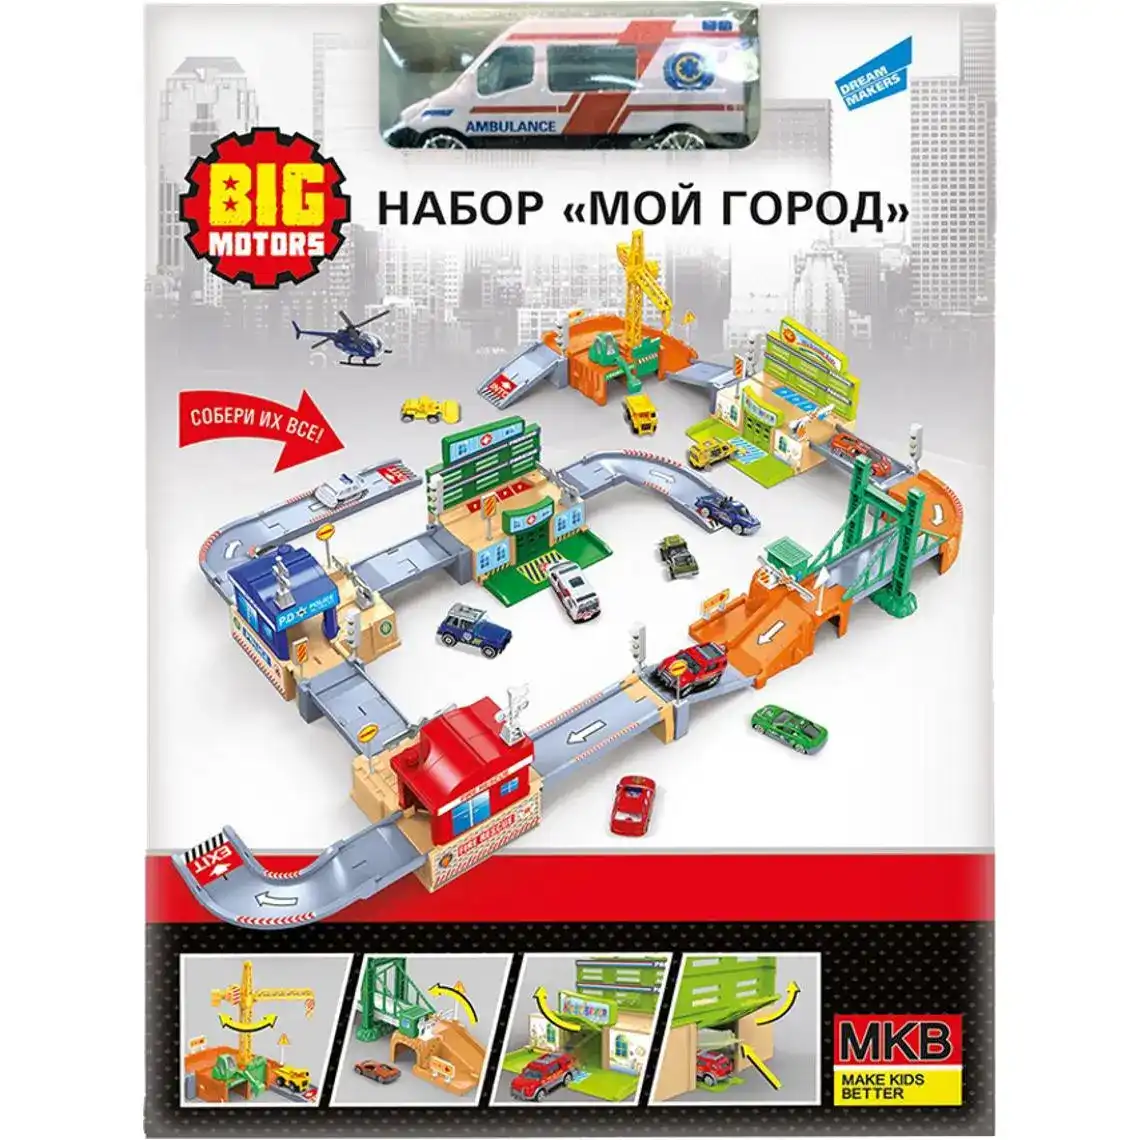 Ігровий набір Big Motors Моє місто (0607-15) для дітей від 3 років